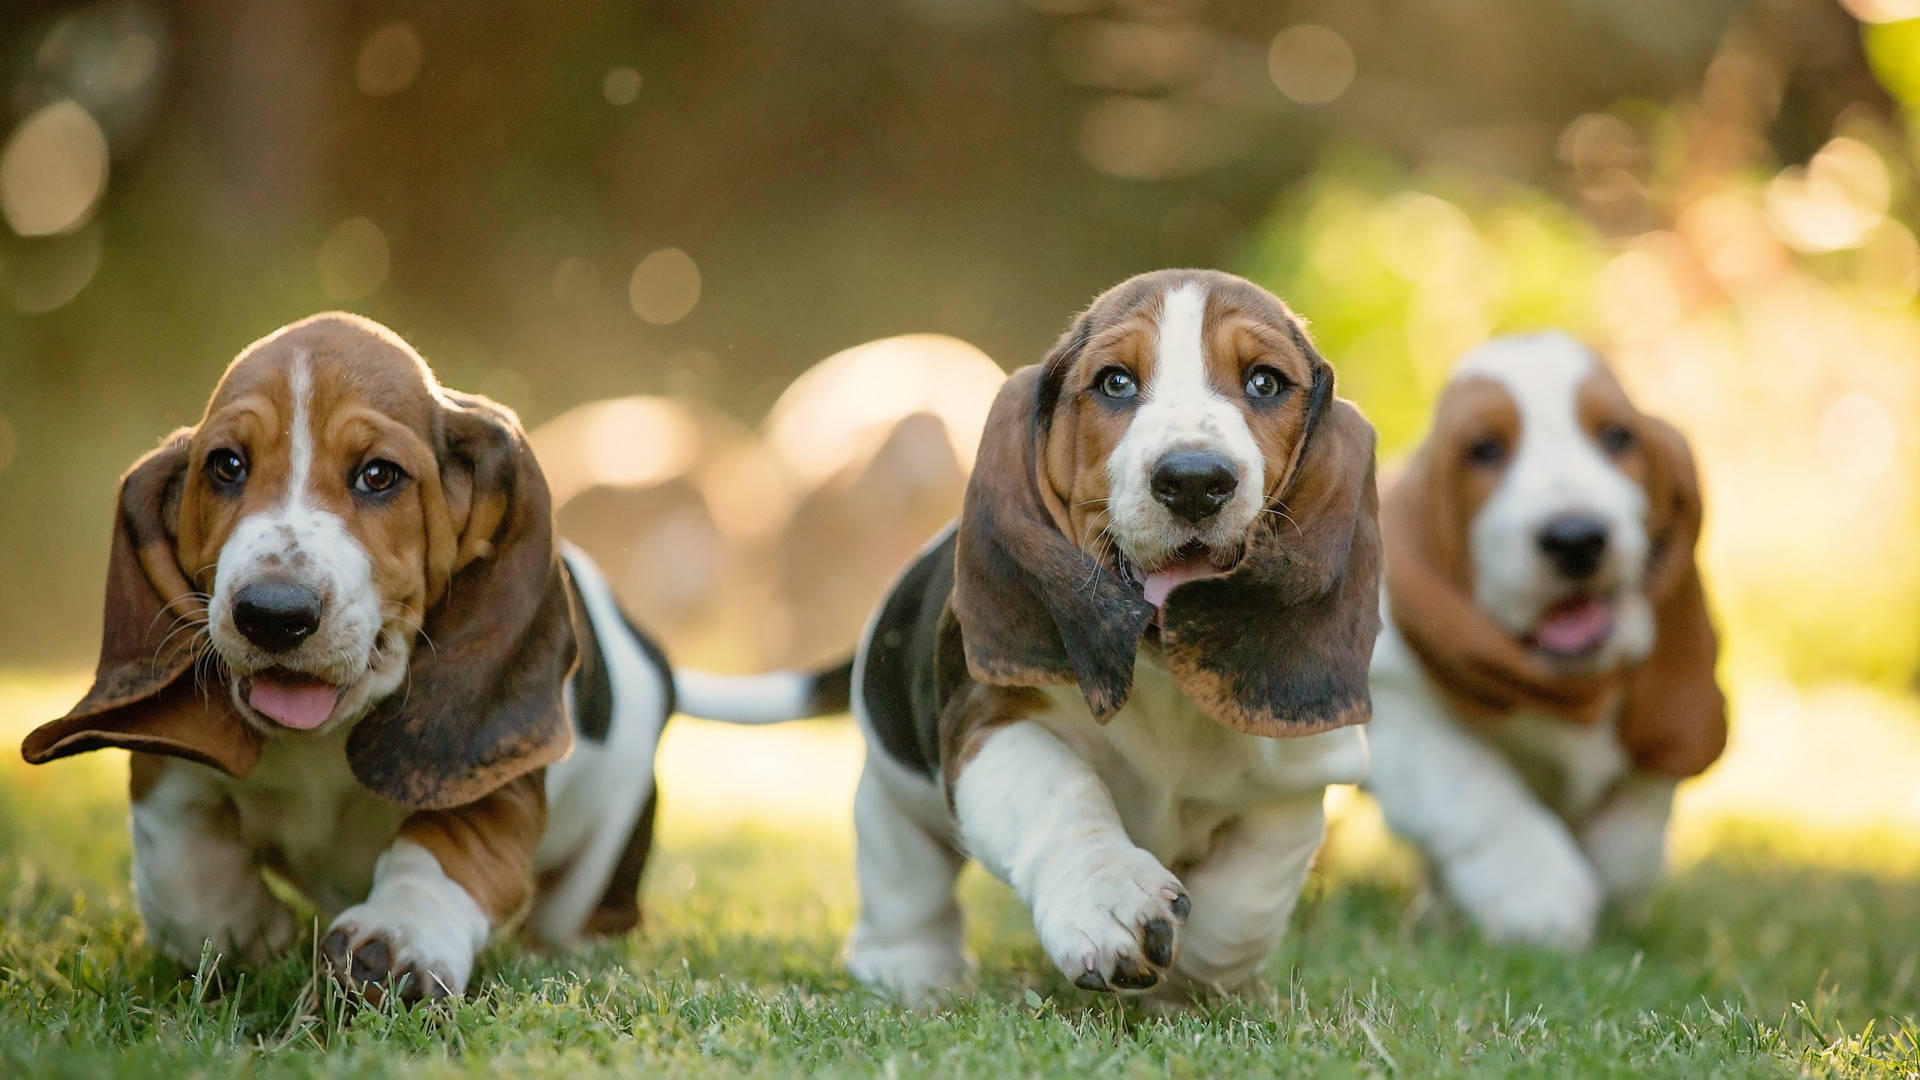 Cute Running Basset Hound Dogs Background